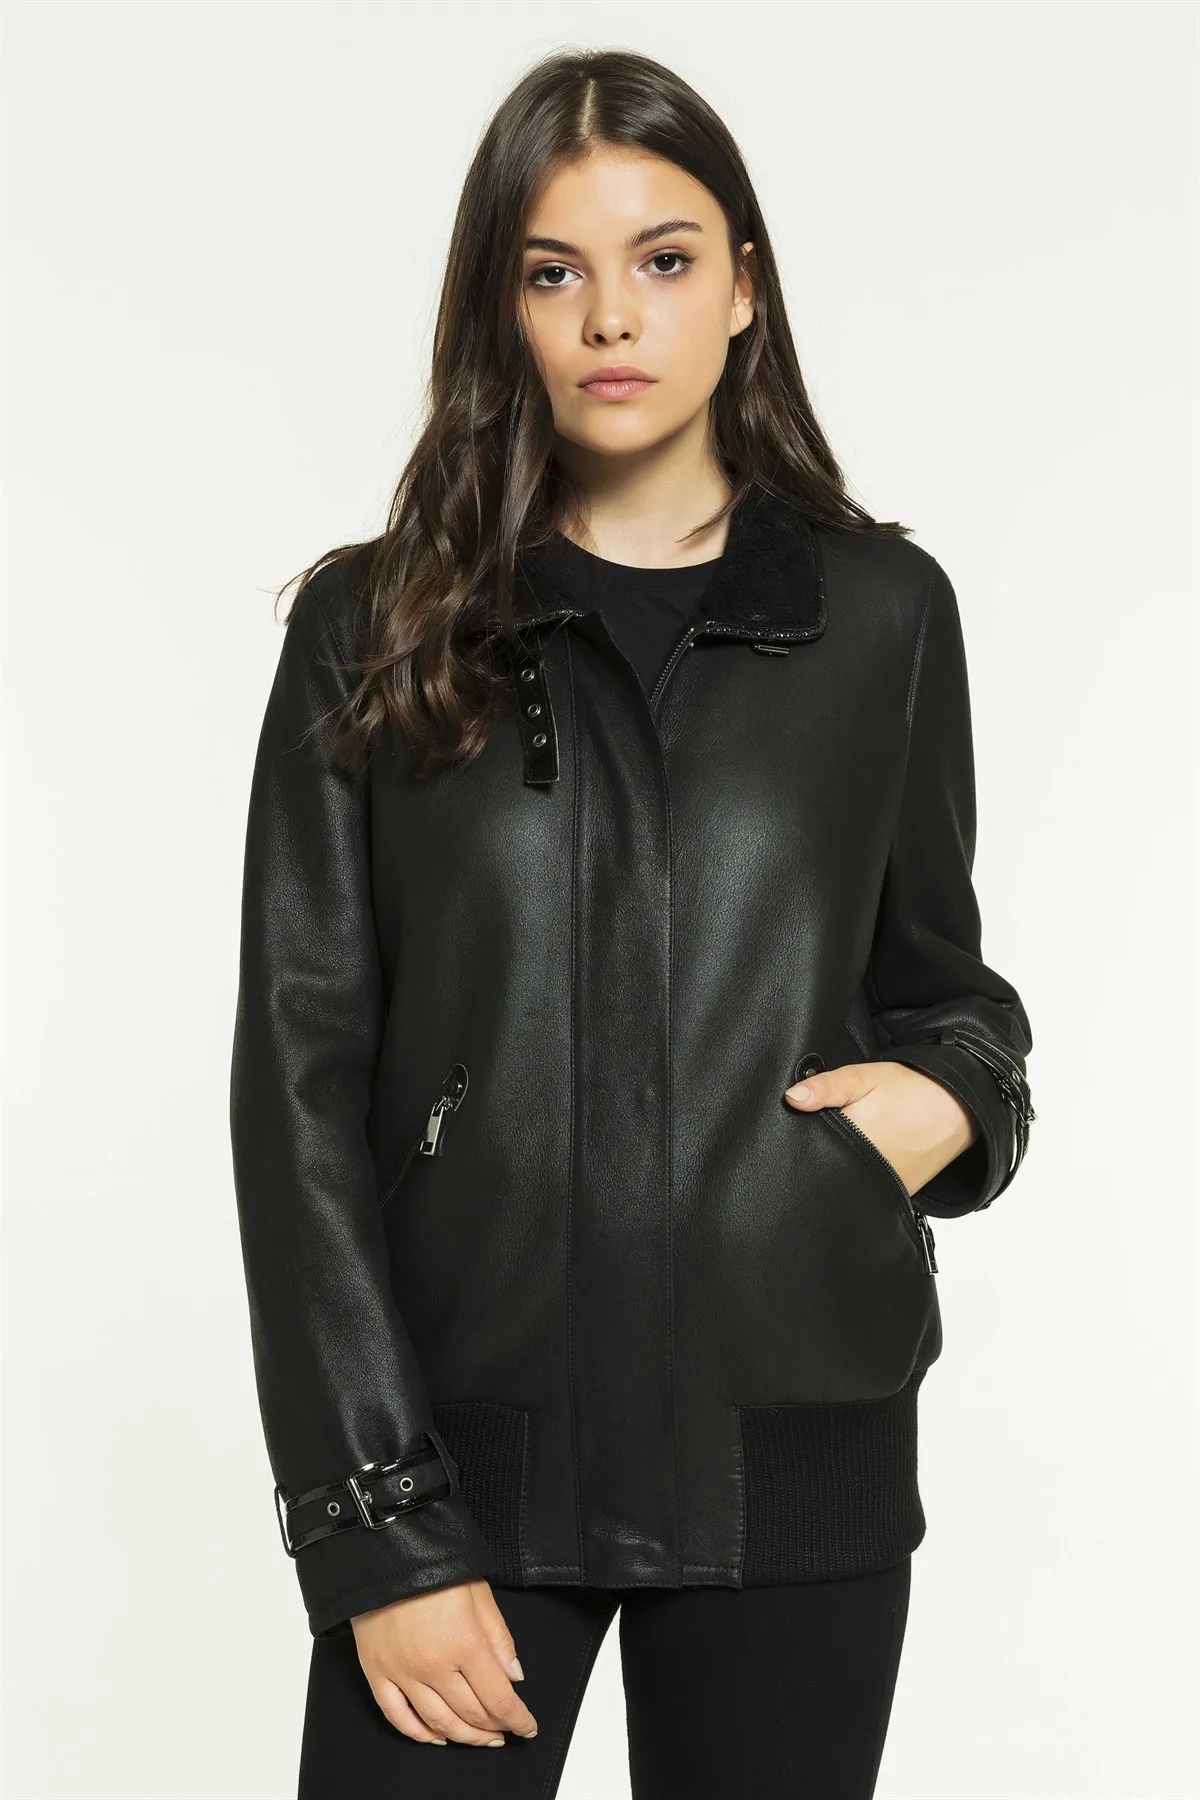 Women's College Black Shearling Leather Jacket Genuine Lambskin Biker Coat New Year Fashion Casual Wear Winter Coat Casual Wear